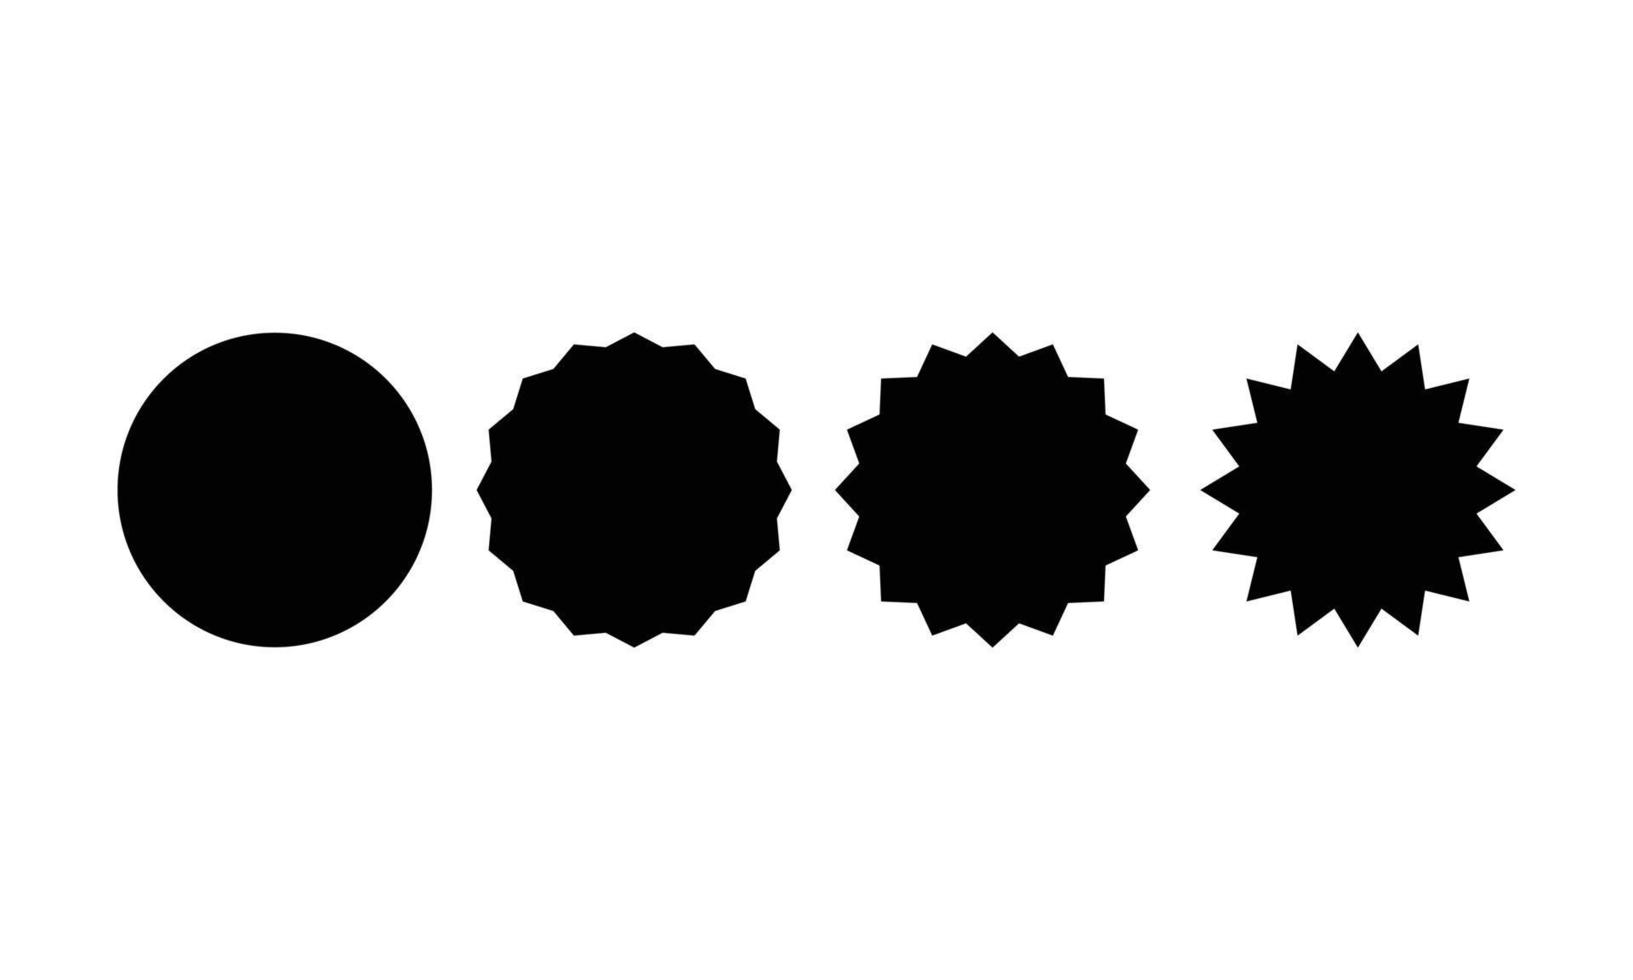 basisronde en stervorm ingesteld voor stickerverkoop in zwarte kleur geïsoleerd op een witte achtergrond. element vectorontwerp voor label, tag, promo, sjabloon, campagne, enz. vector